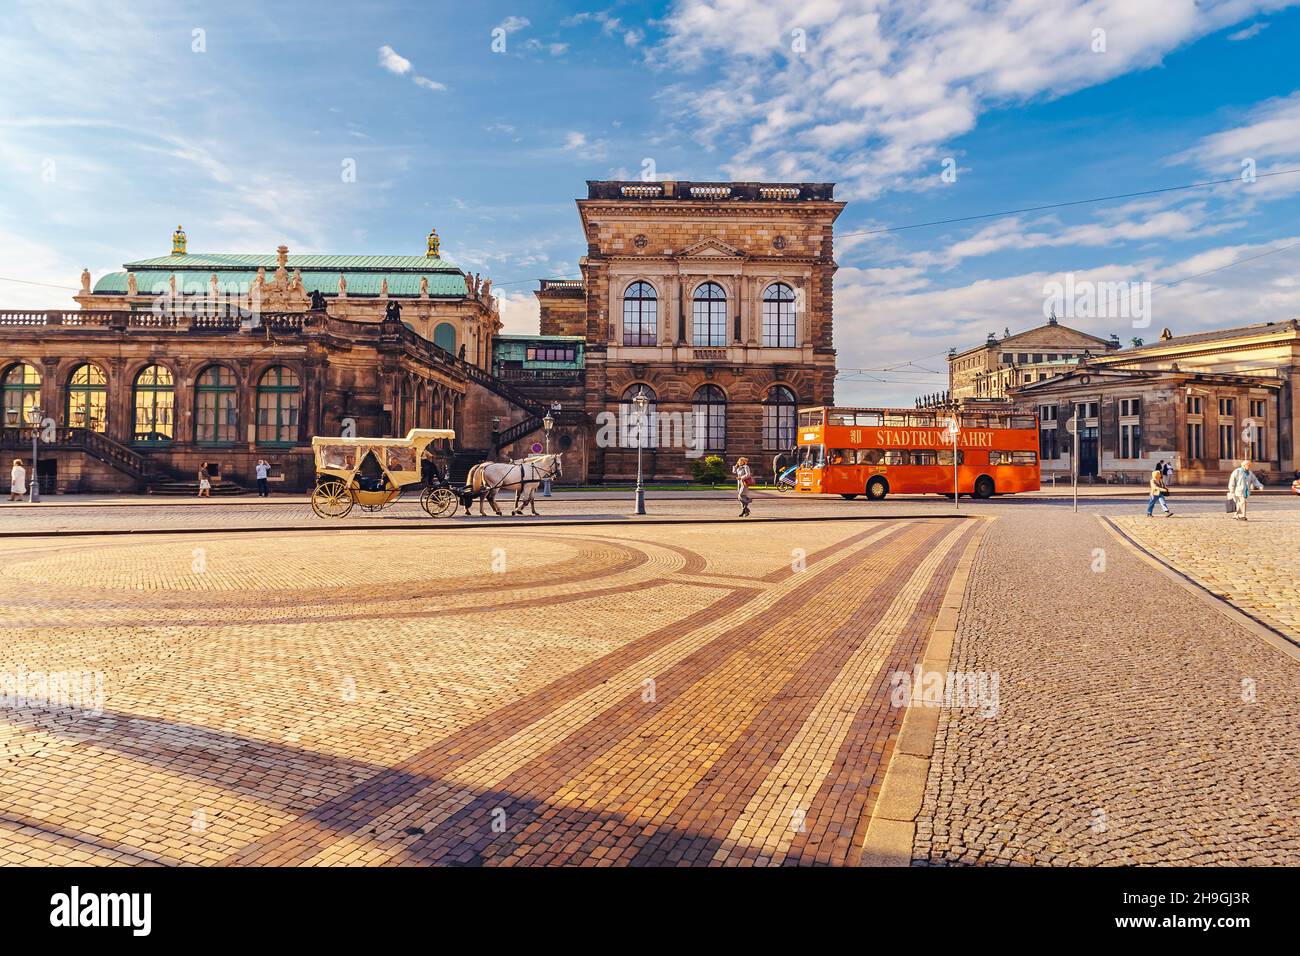 DRESDE, SAXE, ALLEMAGNE - VERS AOÛT 2018 : le paysage urbain de la ville de Dresde et de ses environs, Allemagne. Banque D'Images